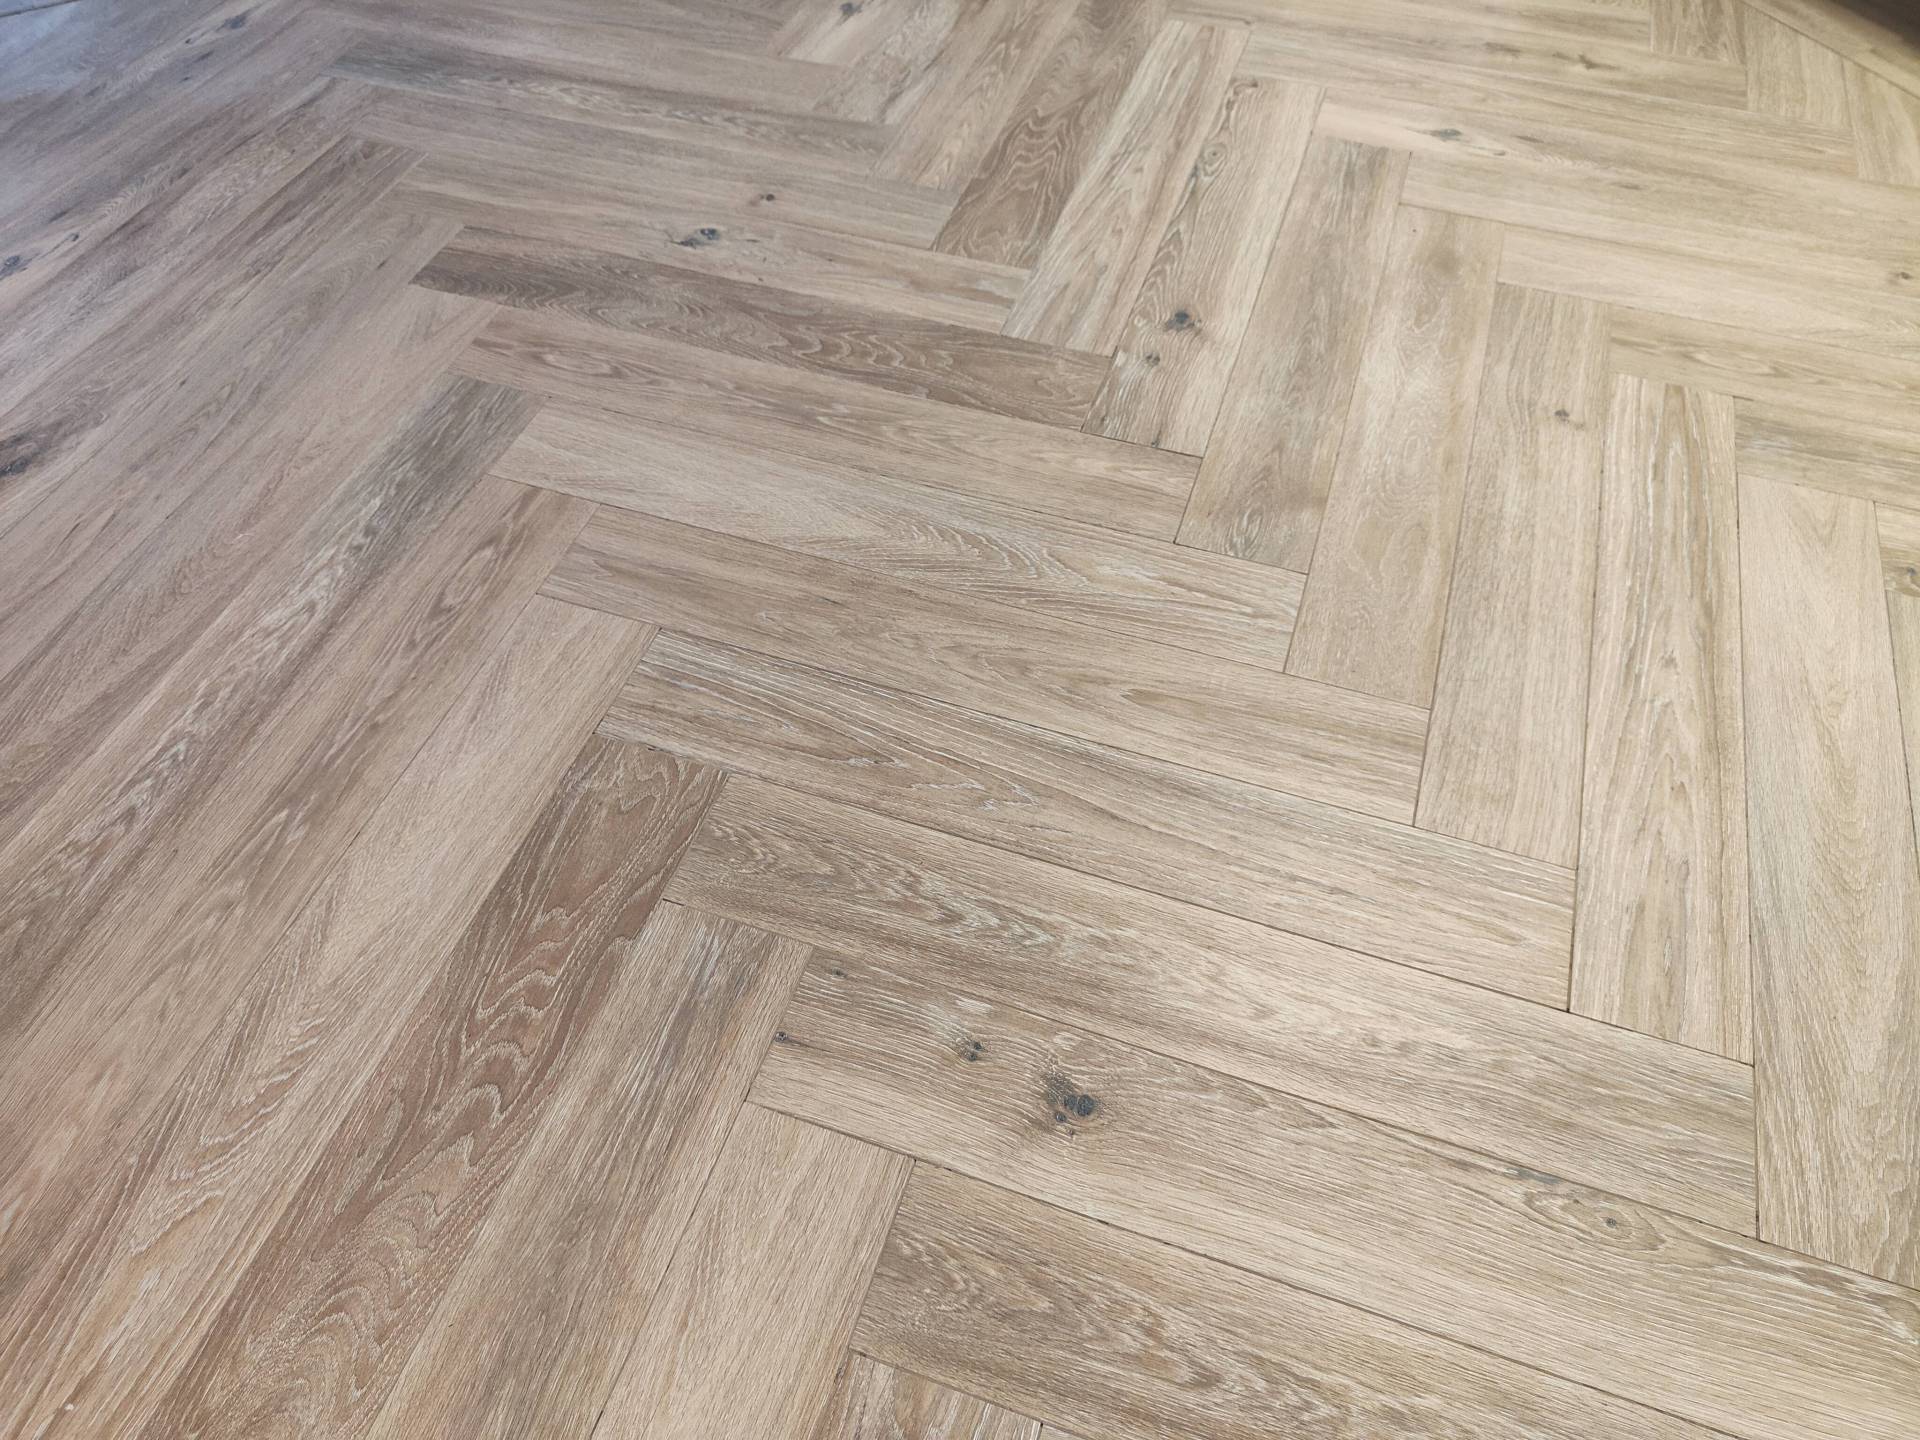 Visgraat vloer met houtlook tegels